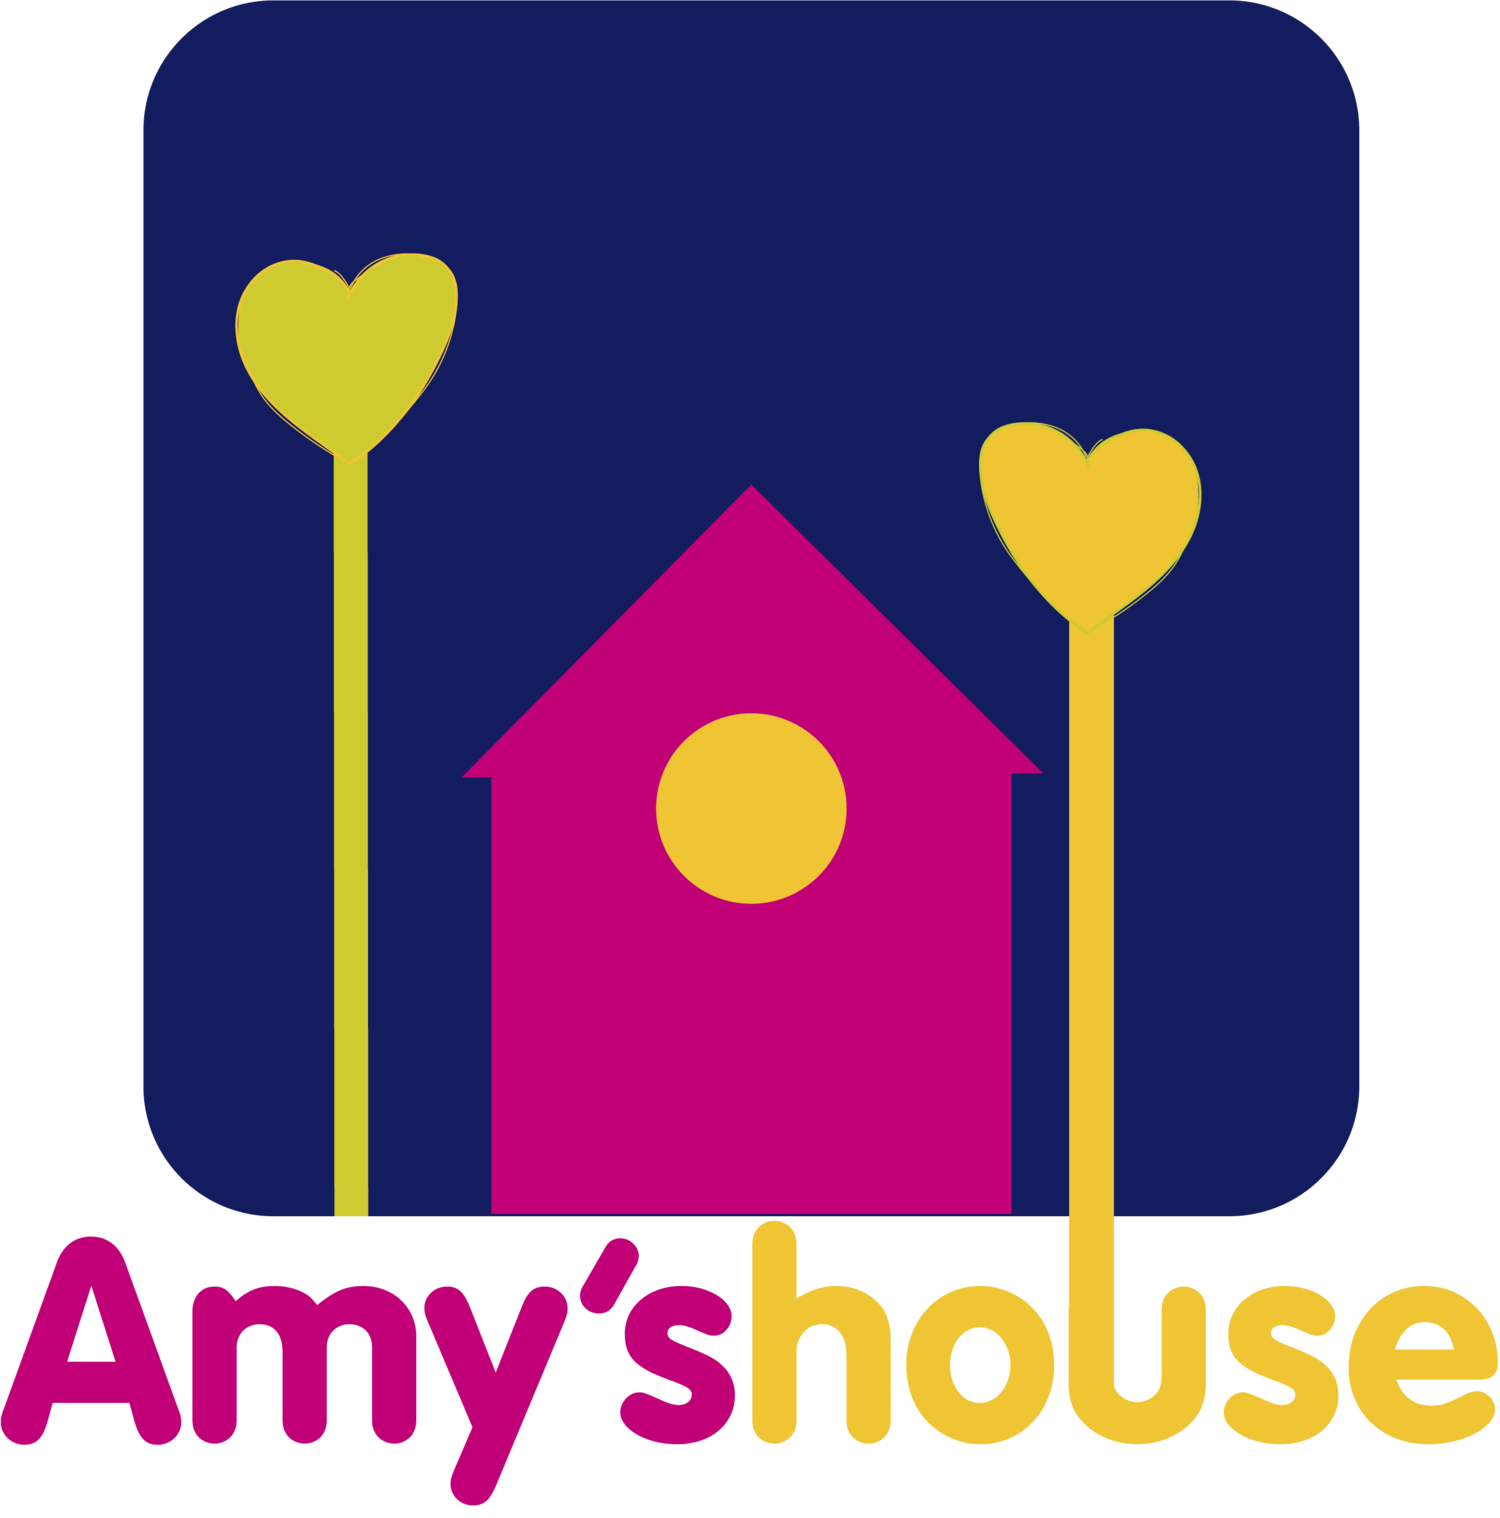 Amy's House